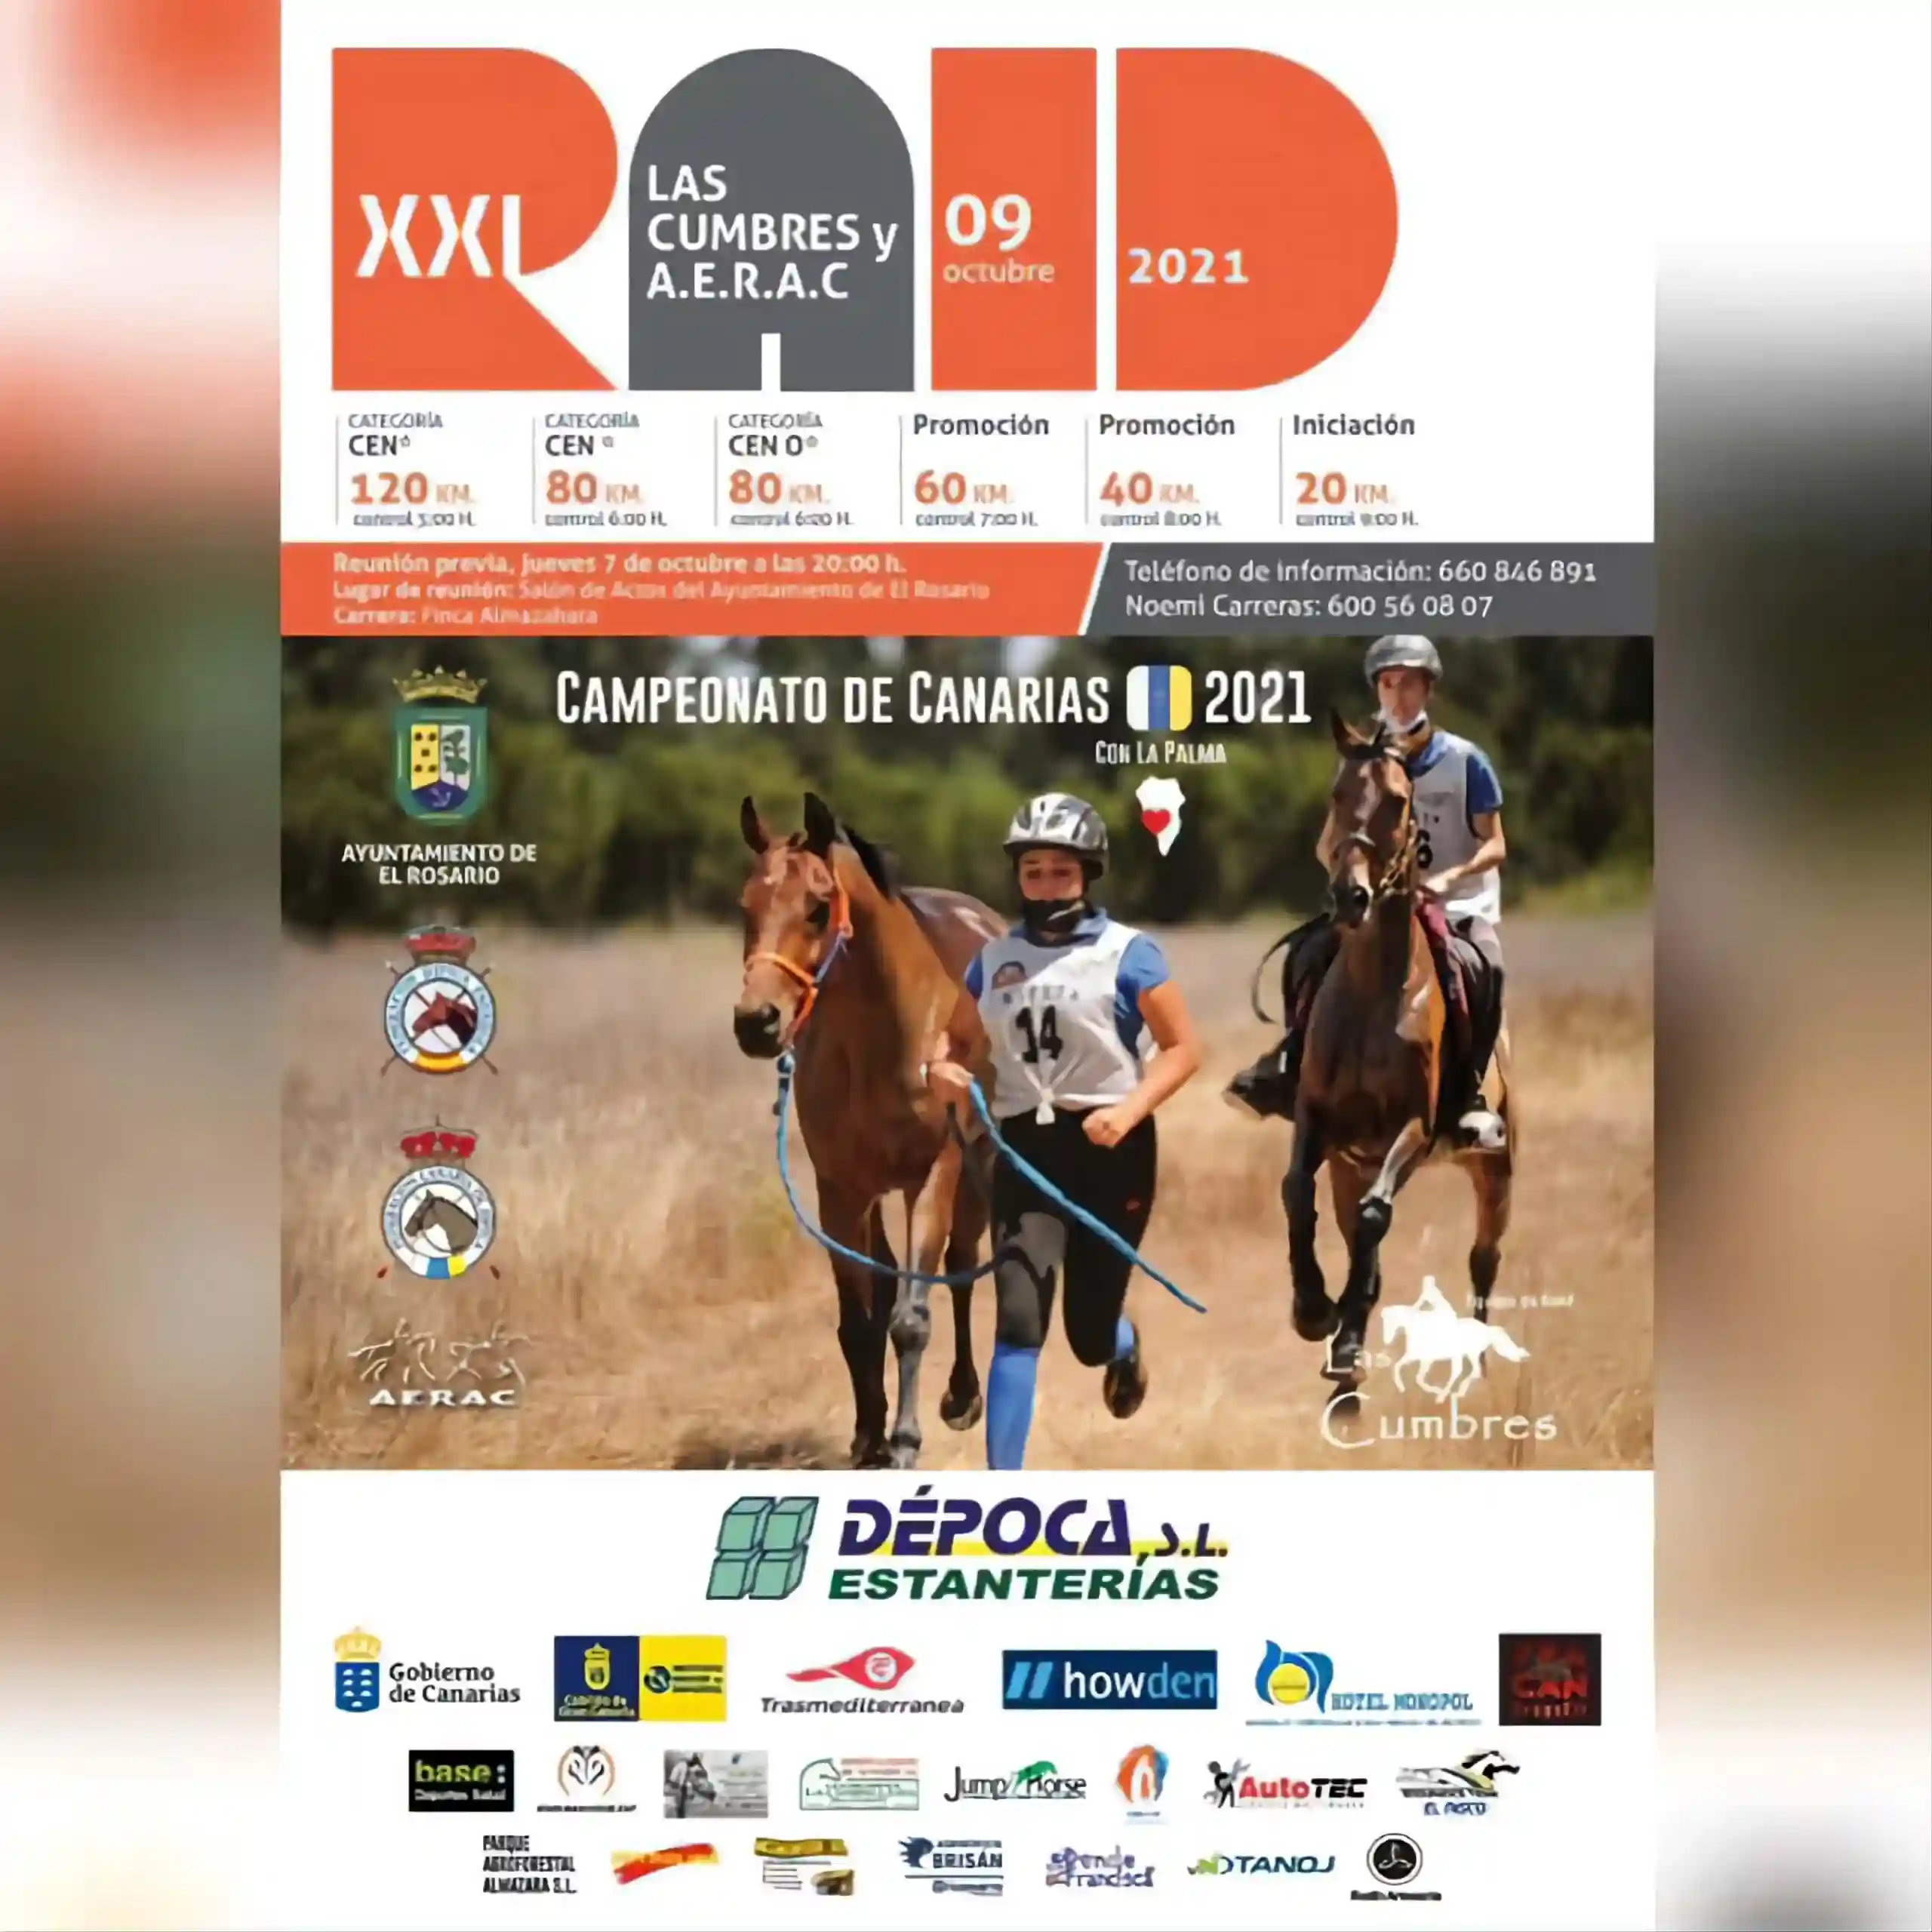 Poster of XXI Raid las Cumbres Campeonato de Canarias 2021